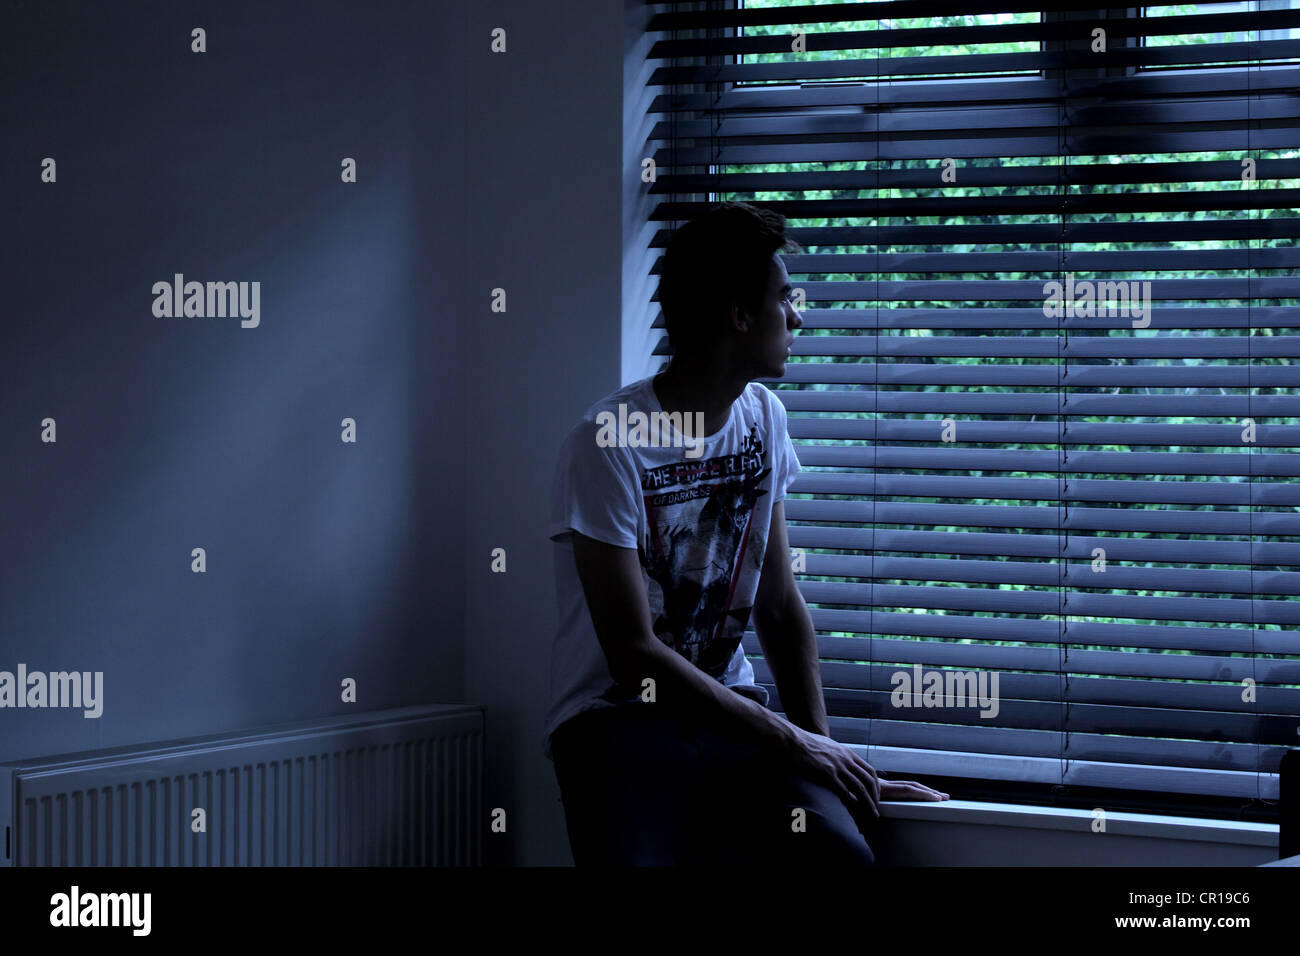 Macho joven sentado en una habitación oscura que mira hacia fuera a través de la persiana de una ventana. Modelo y propiedad (propiedad del fotógrafo) liberado. Foto de stock